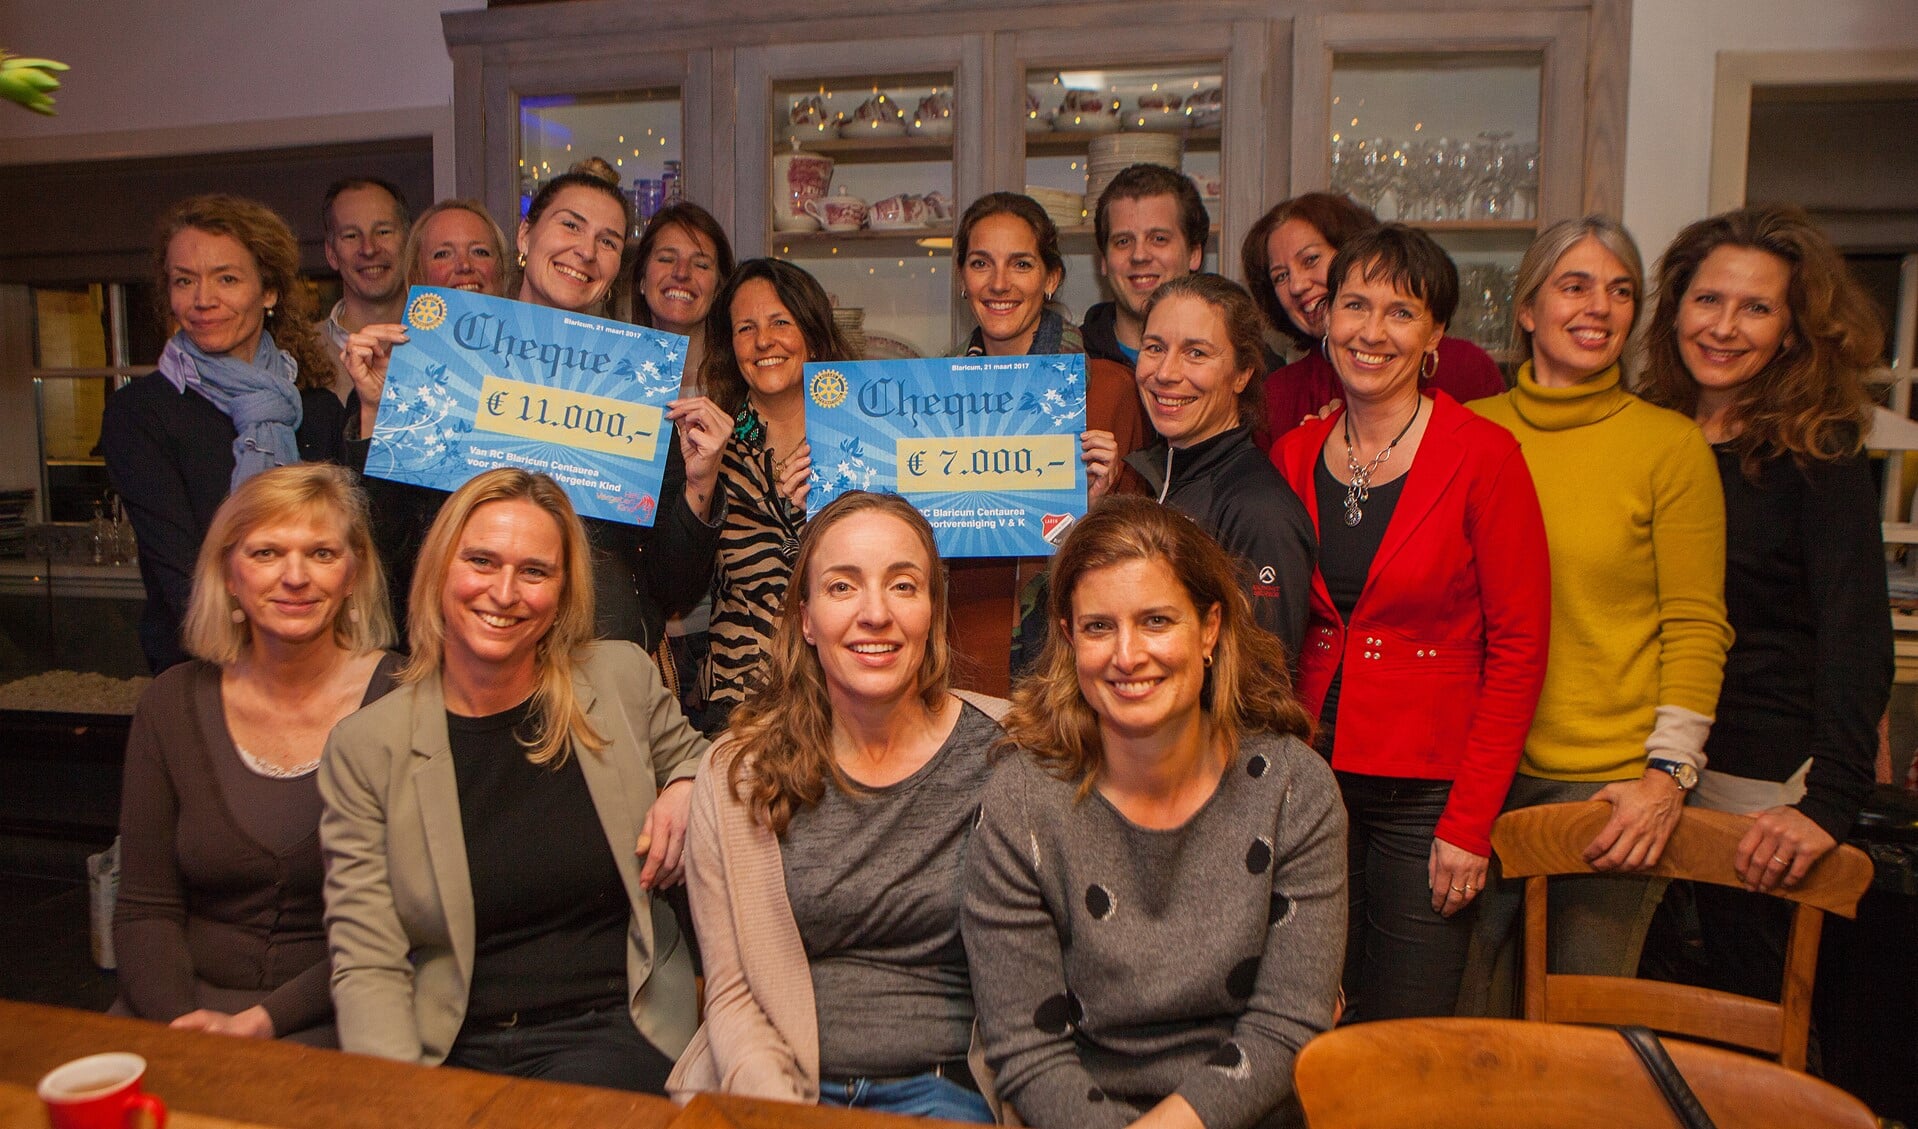 De dames van Rotaryclub Blaricum-Centaurea en vertegenwoordigers van de goede doelen.